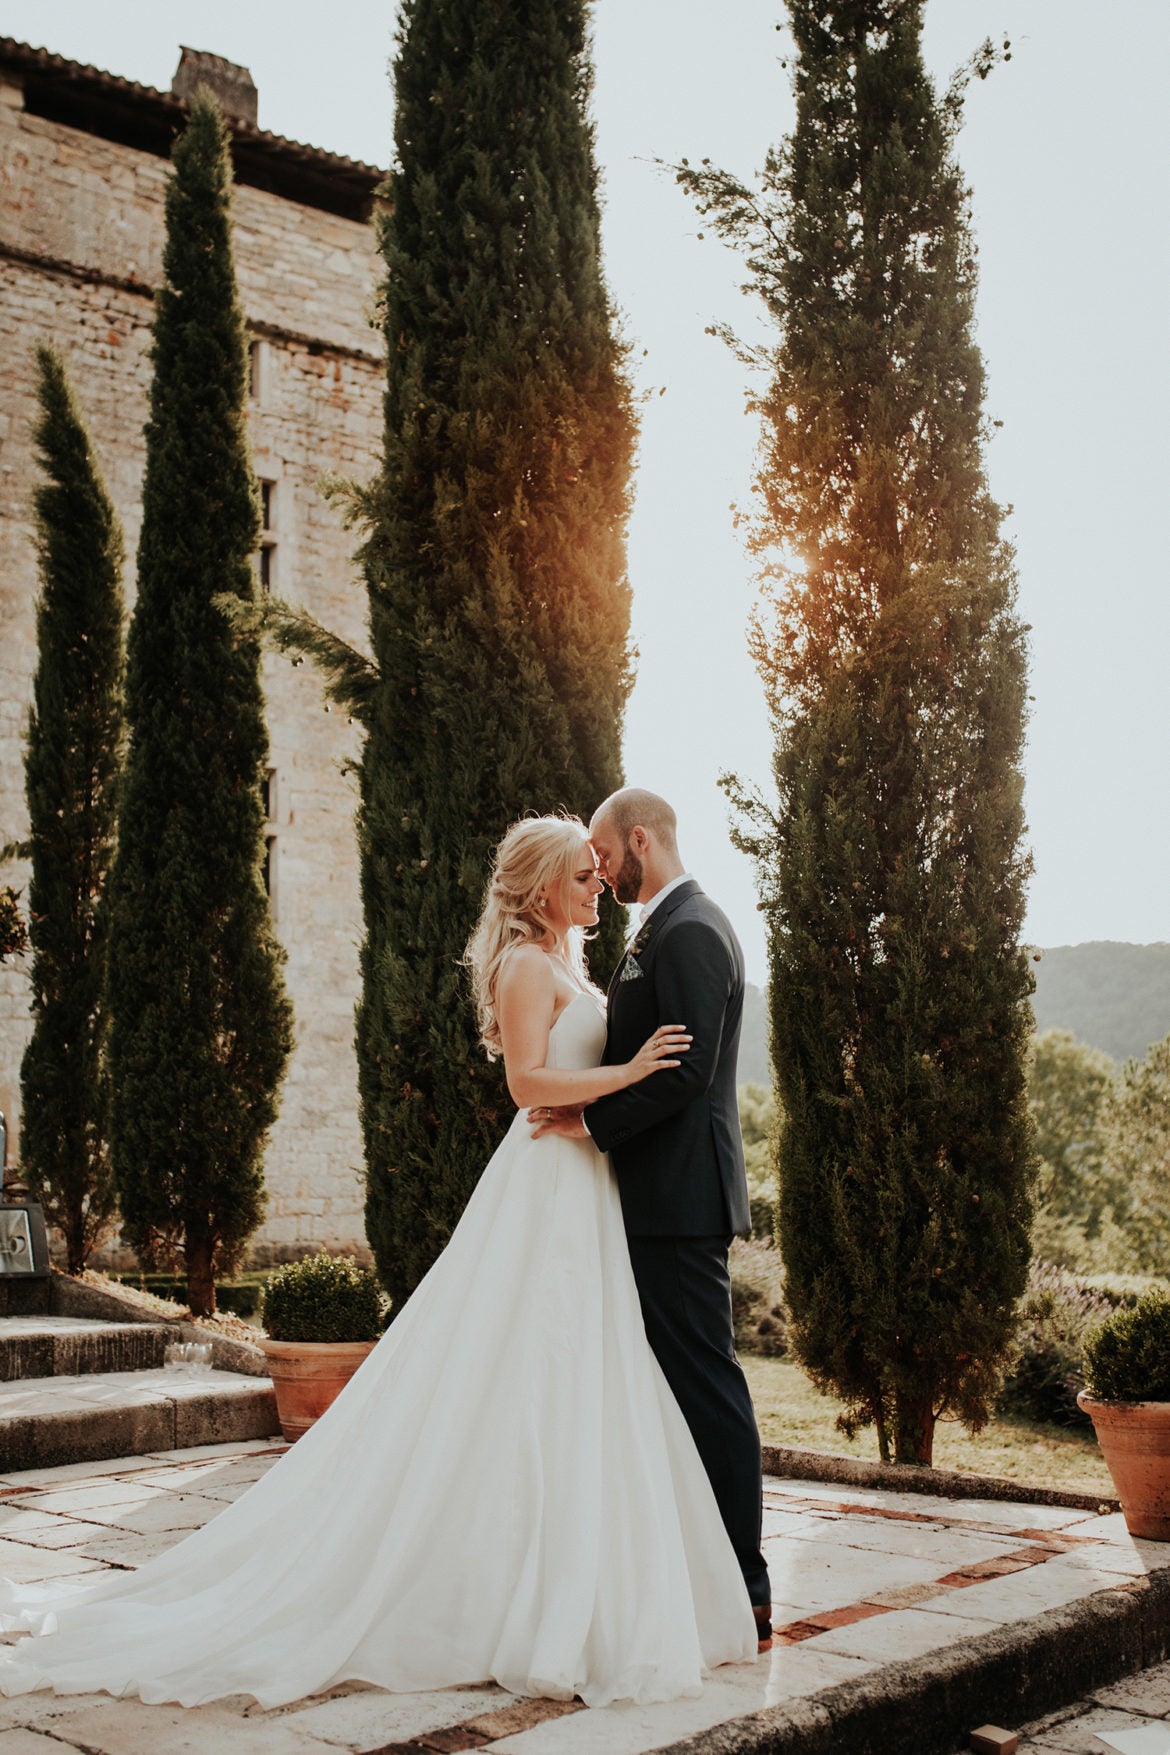 Stephanie & Nicks chateau wedding with a rustic elegance